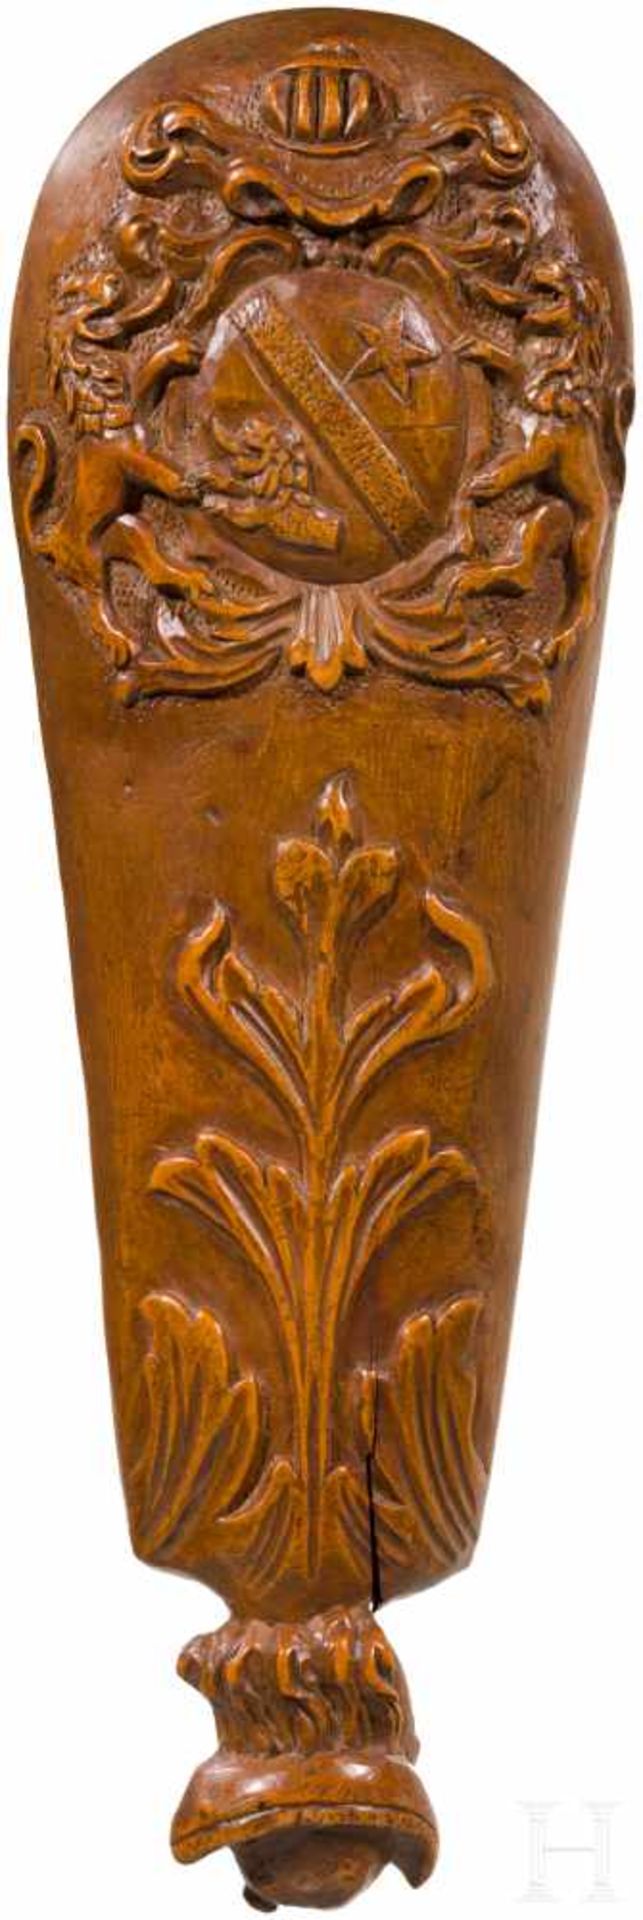 Tabakreibe, Frankreich, 18. Jhdt.Korpus aus Holz mit siebartigem Reibeeinsatz aus Eisen. Rückseite - Bild 2 aus 3